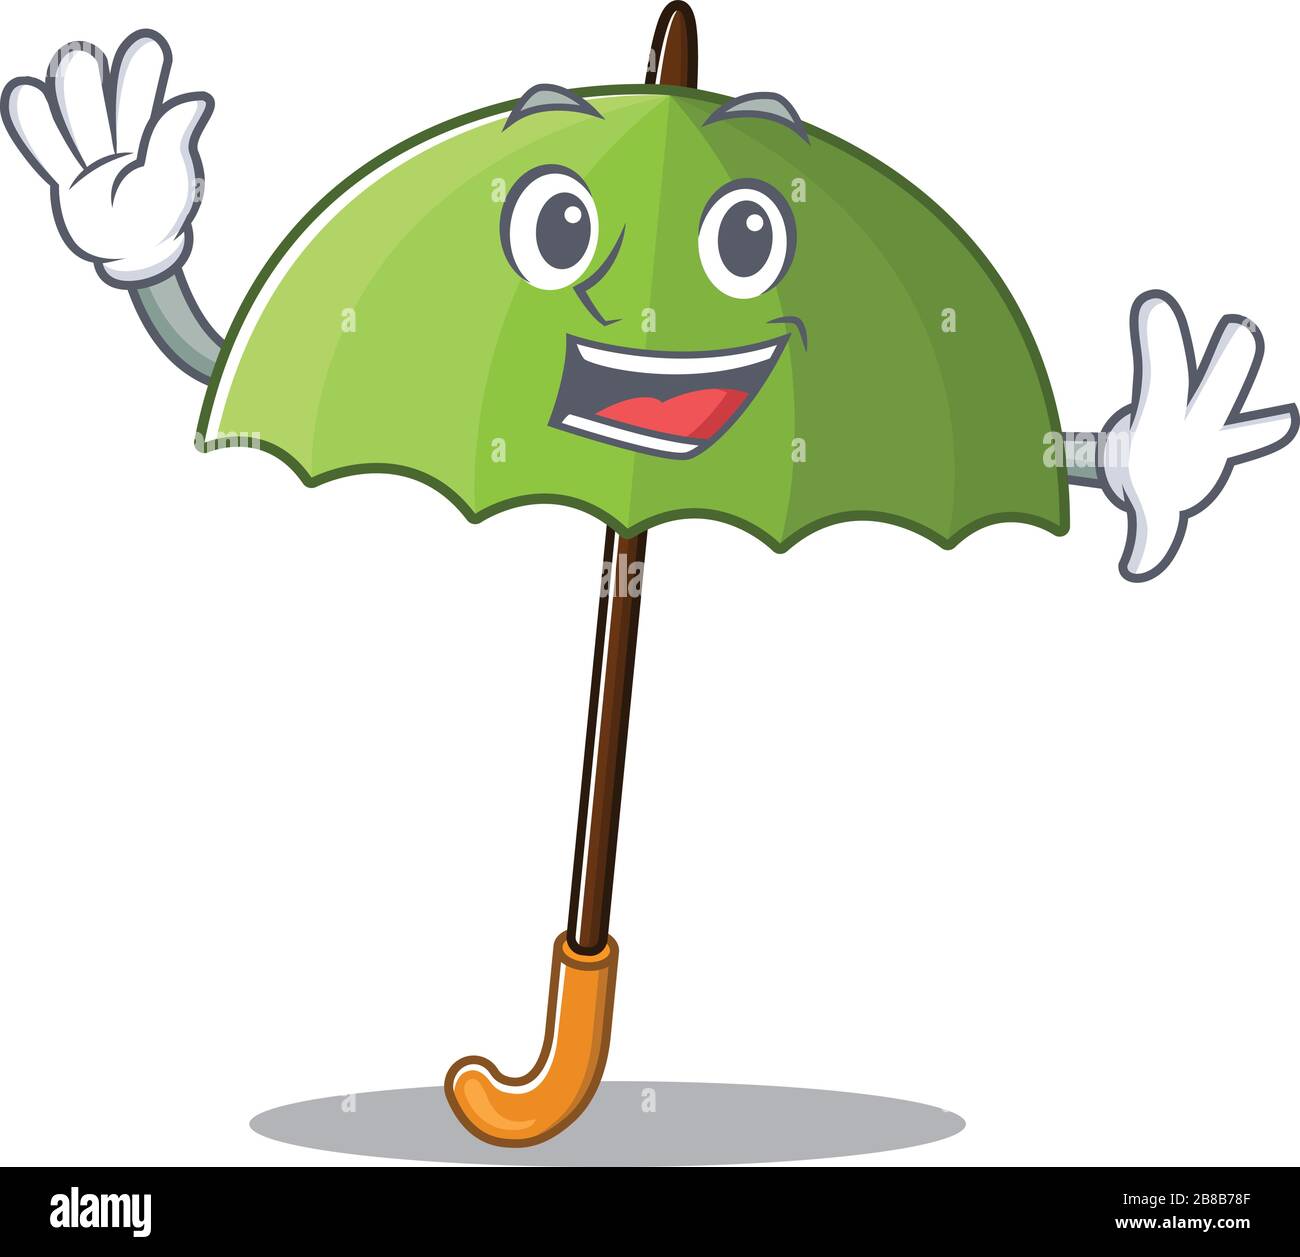 Smiley grüner Regenschirm, Maskottchen mit winkender Hand  Stock-Vektorgrafik - Alamy